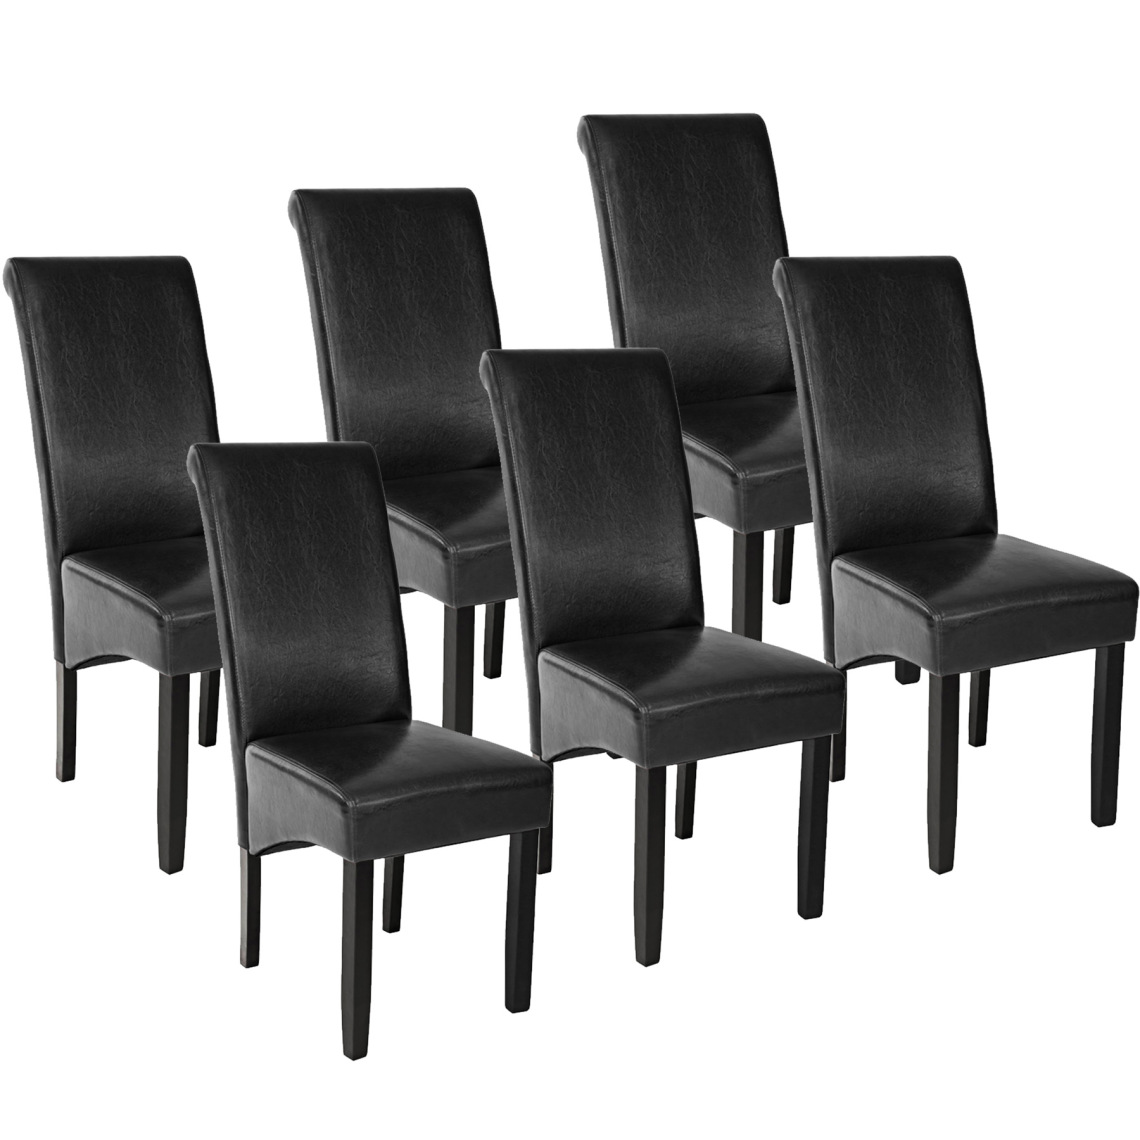 Tectake - Lot de 6 chaises aspect cuir - noir - Chaises